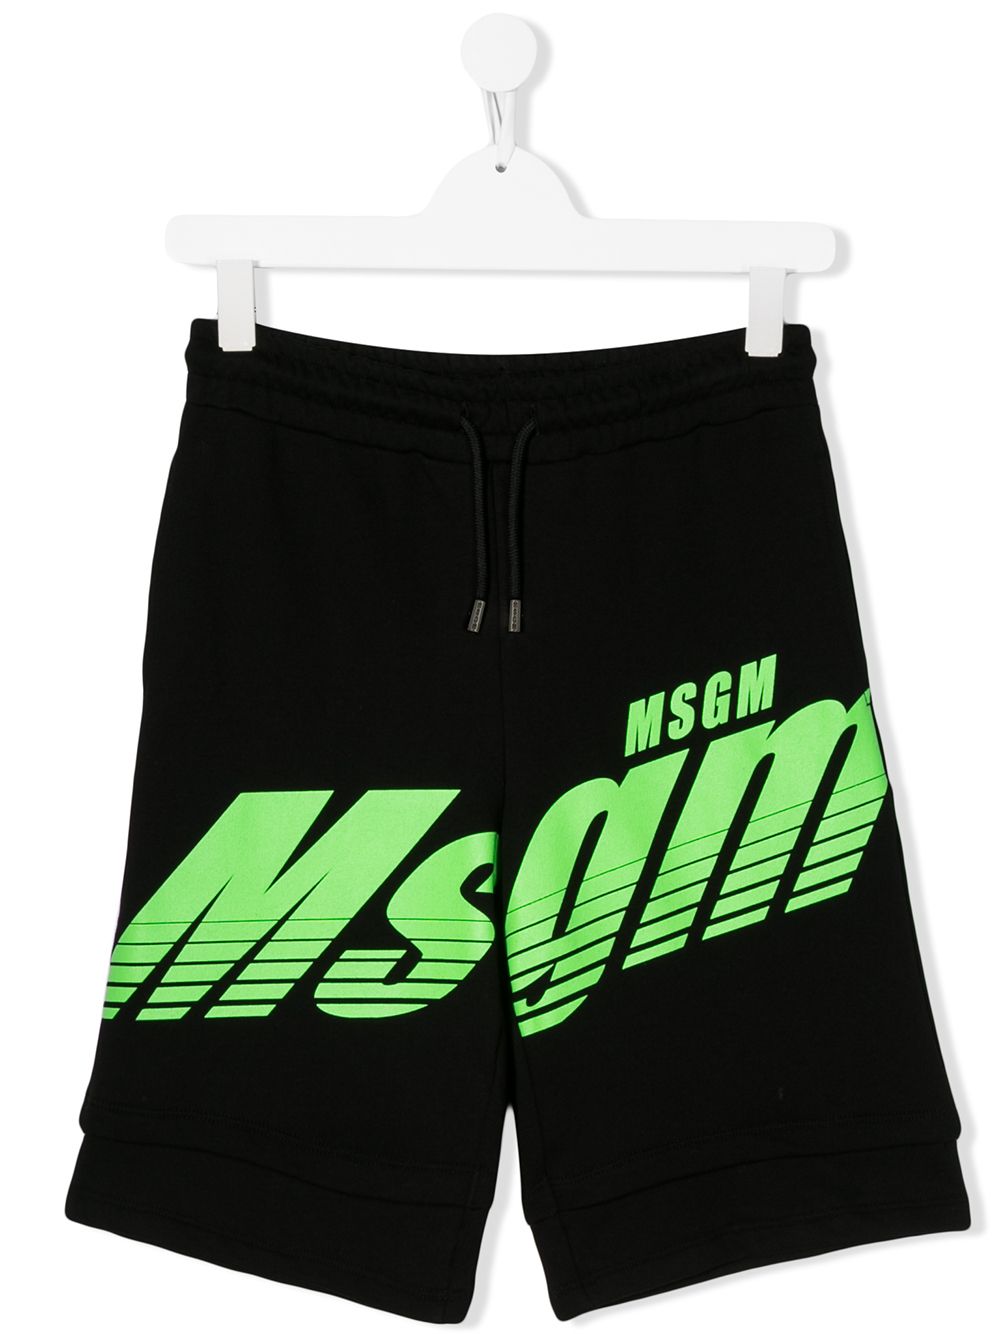 фото Msgm kids спортивные шорты с логотипом